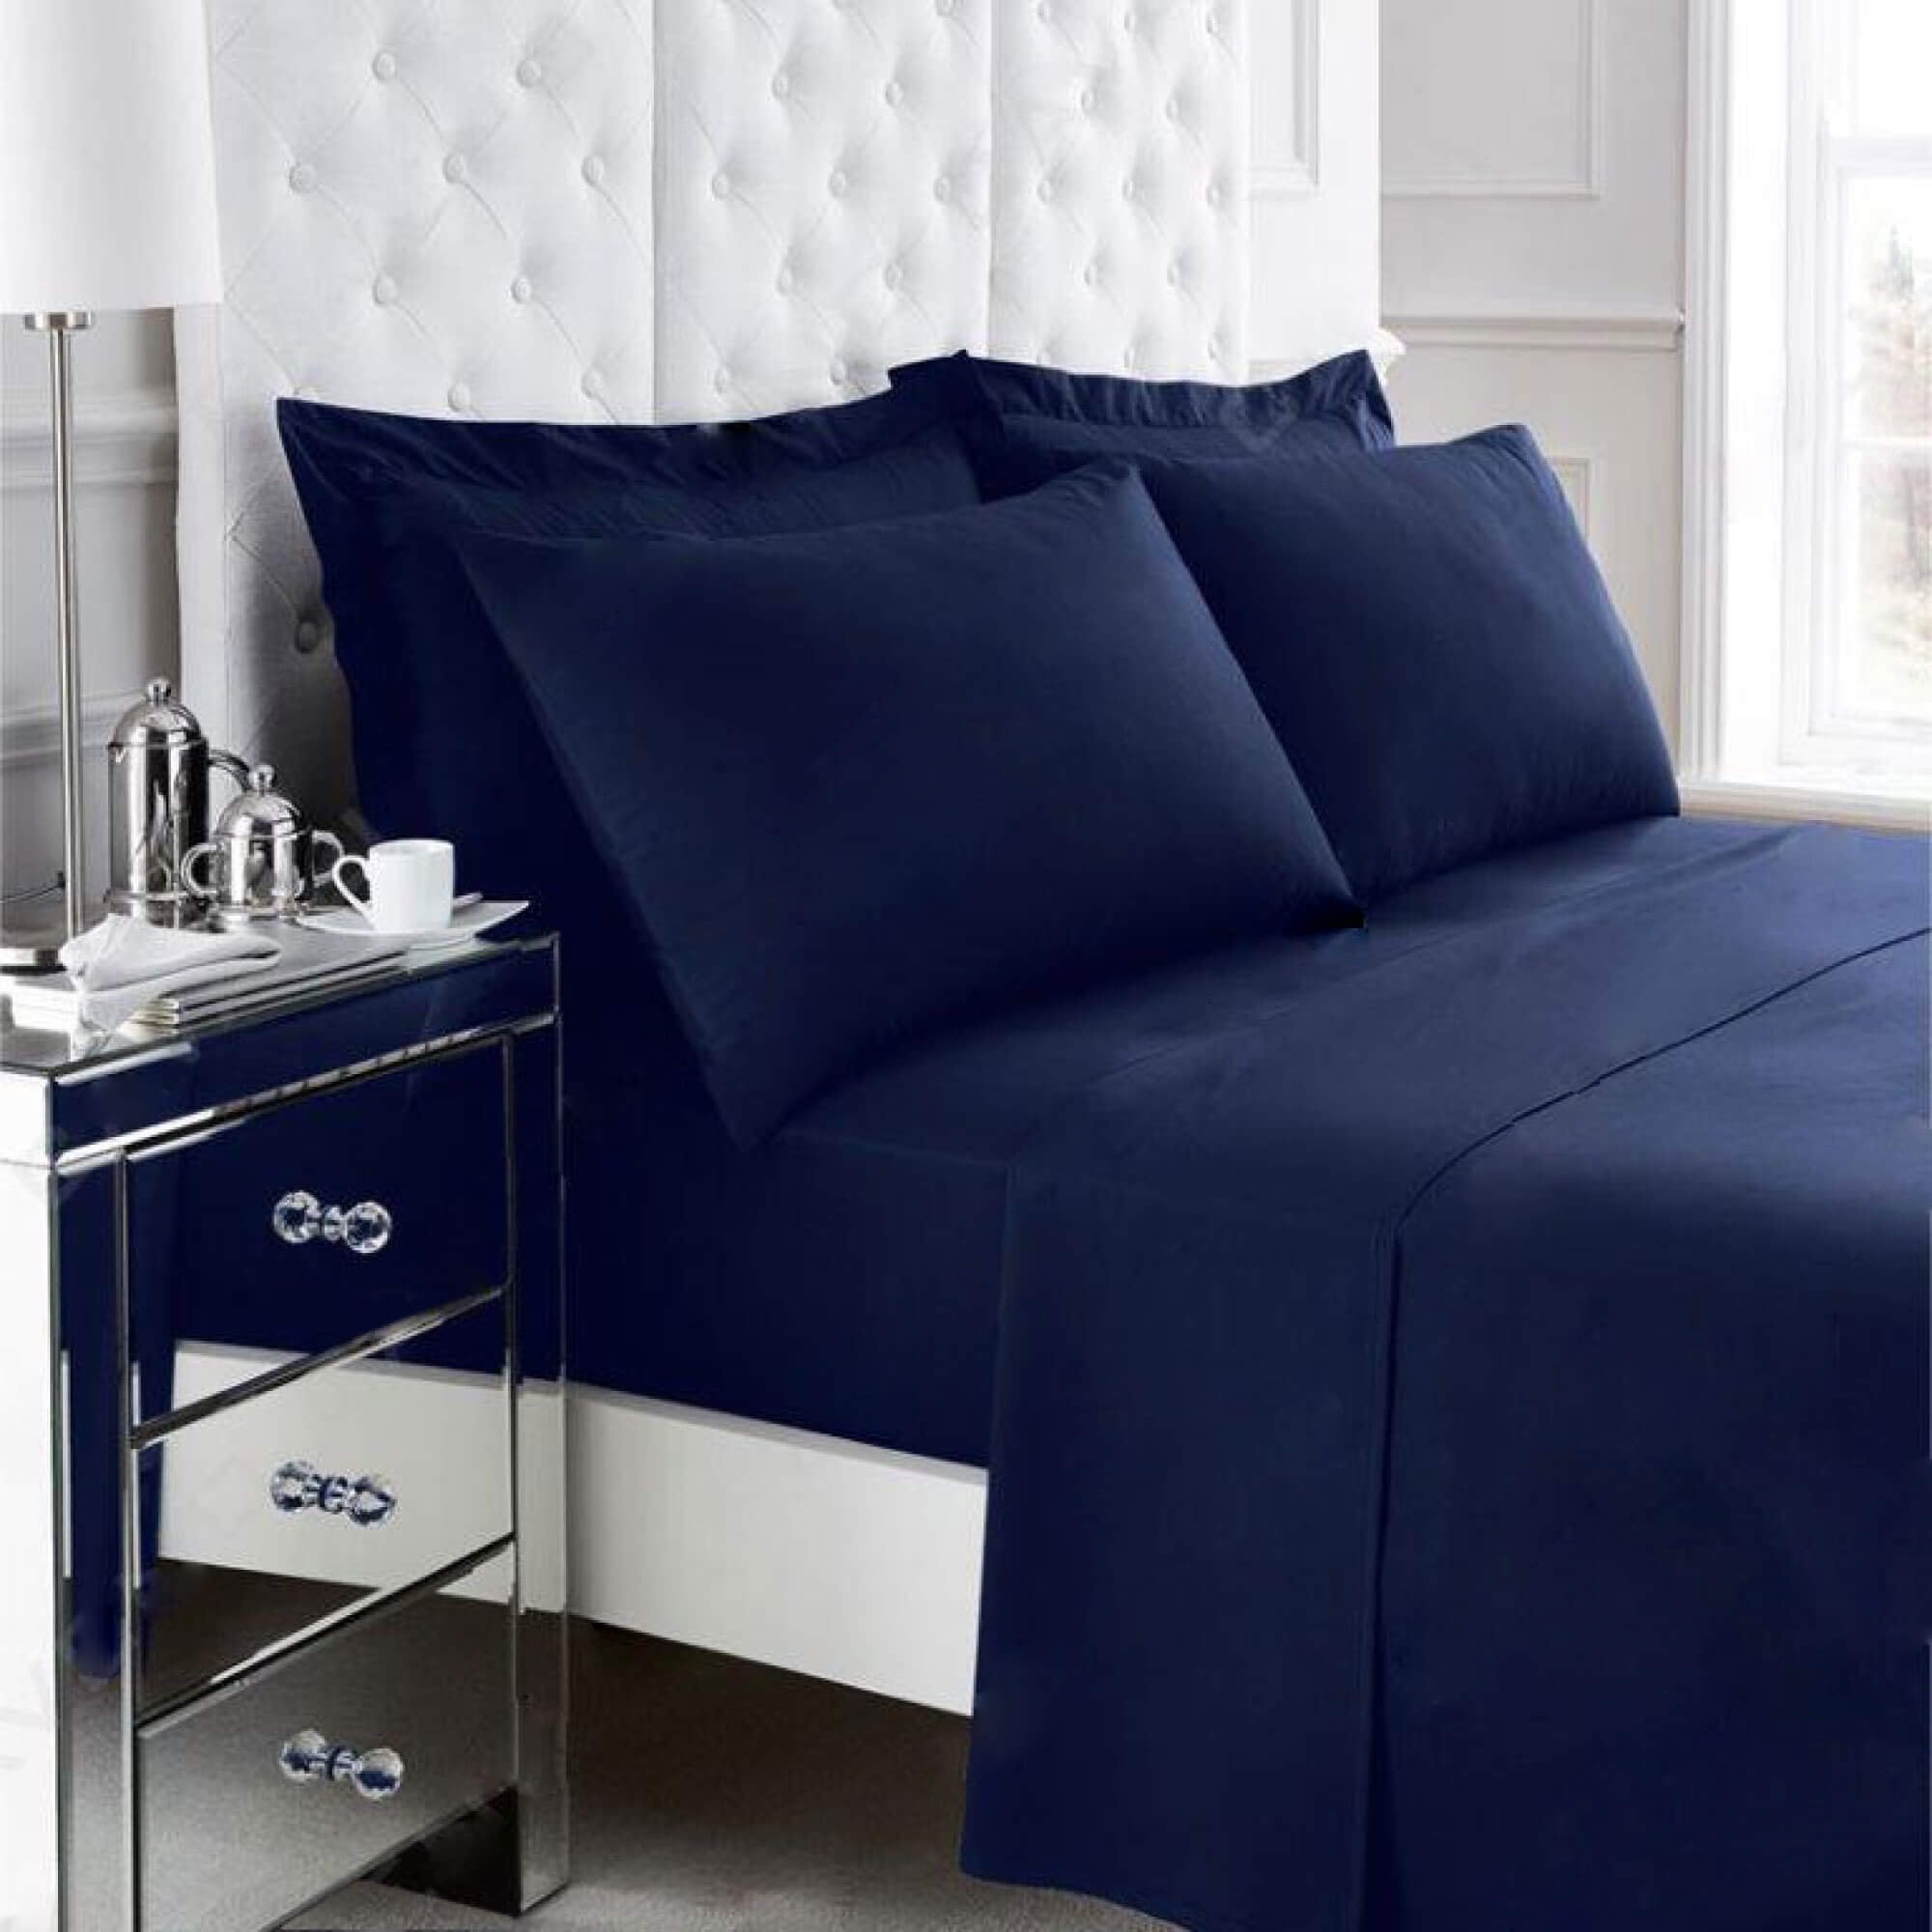 Non Iron Percale Bedding Sheet Range - Navy - Housewife Pillowcase Pair - TJ Hughes